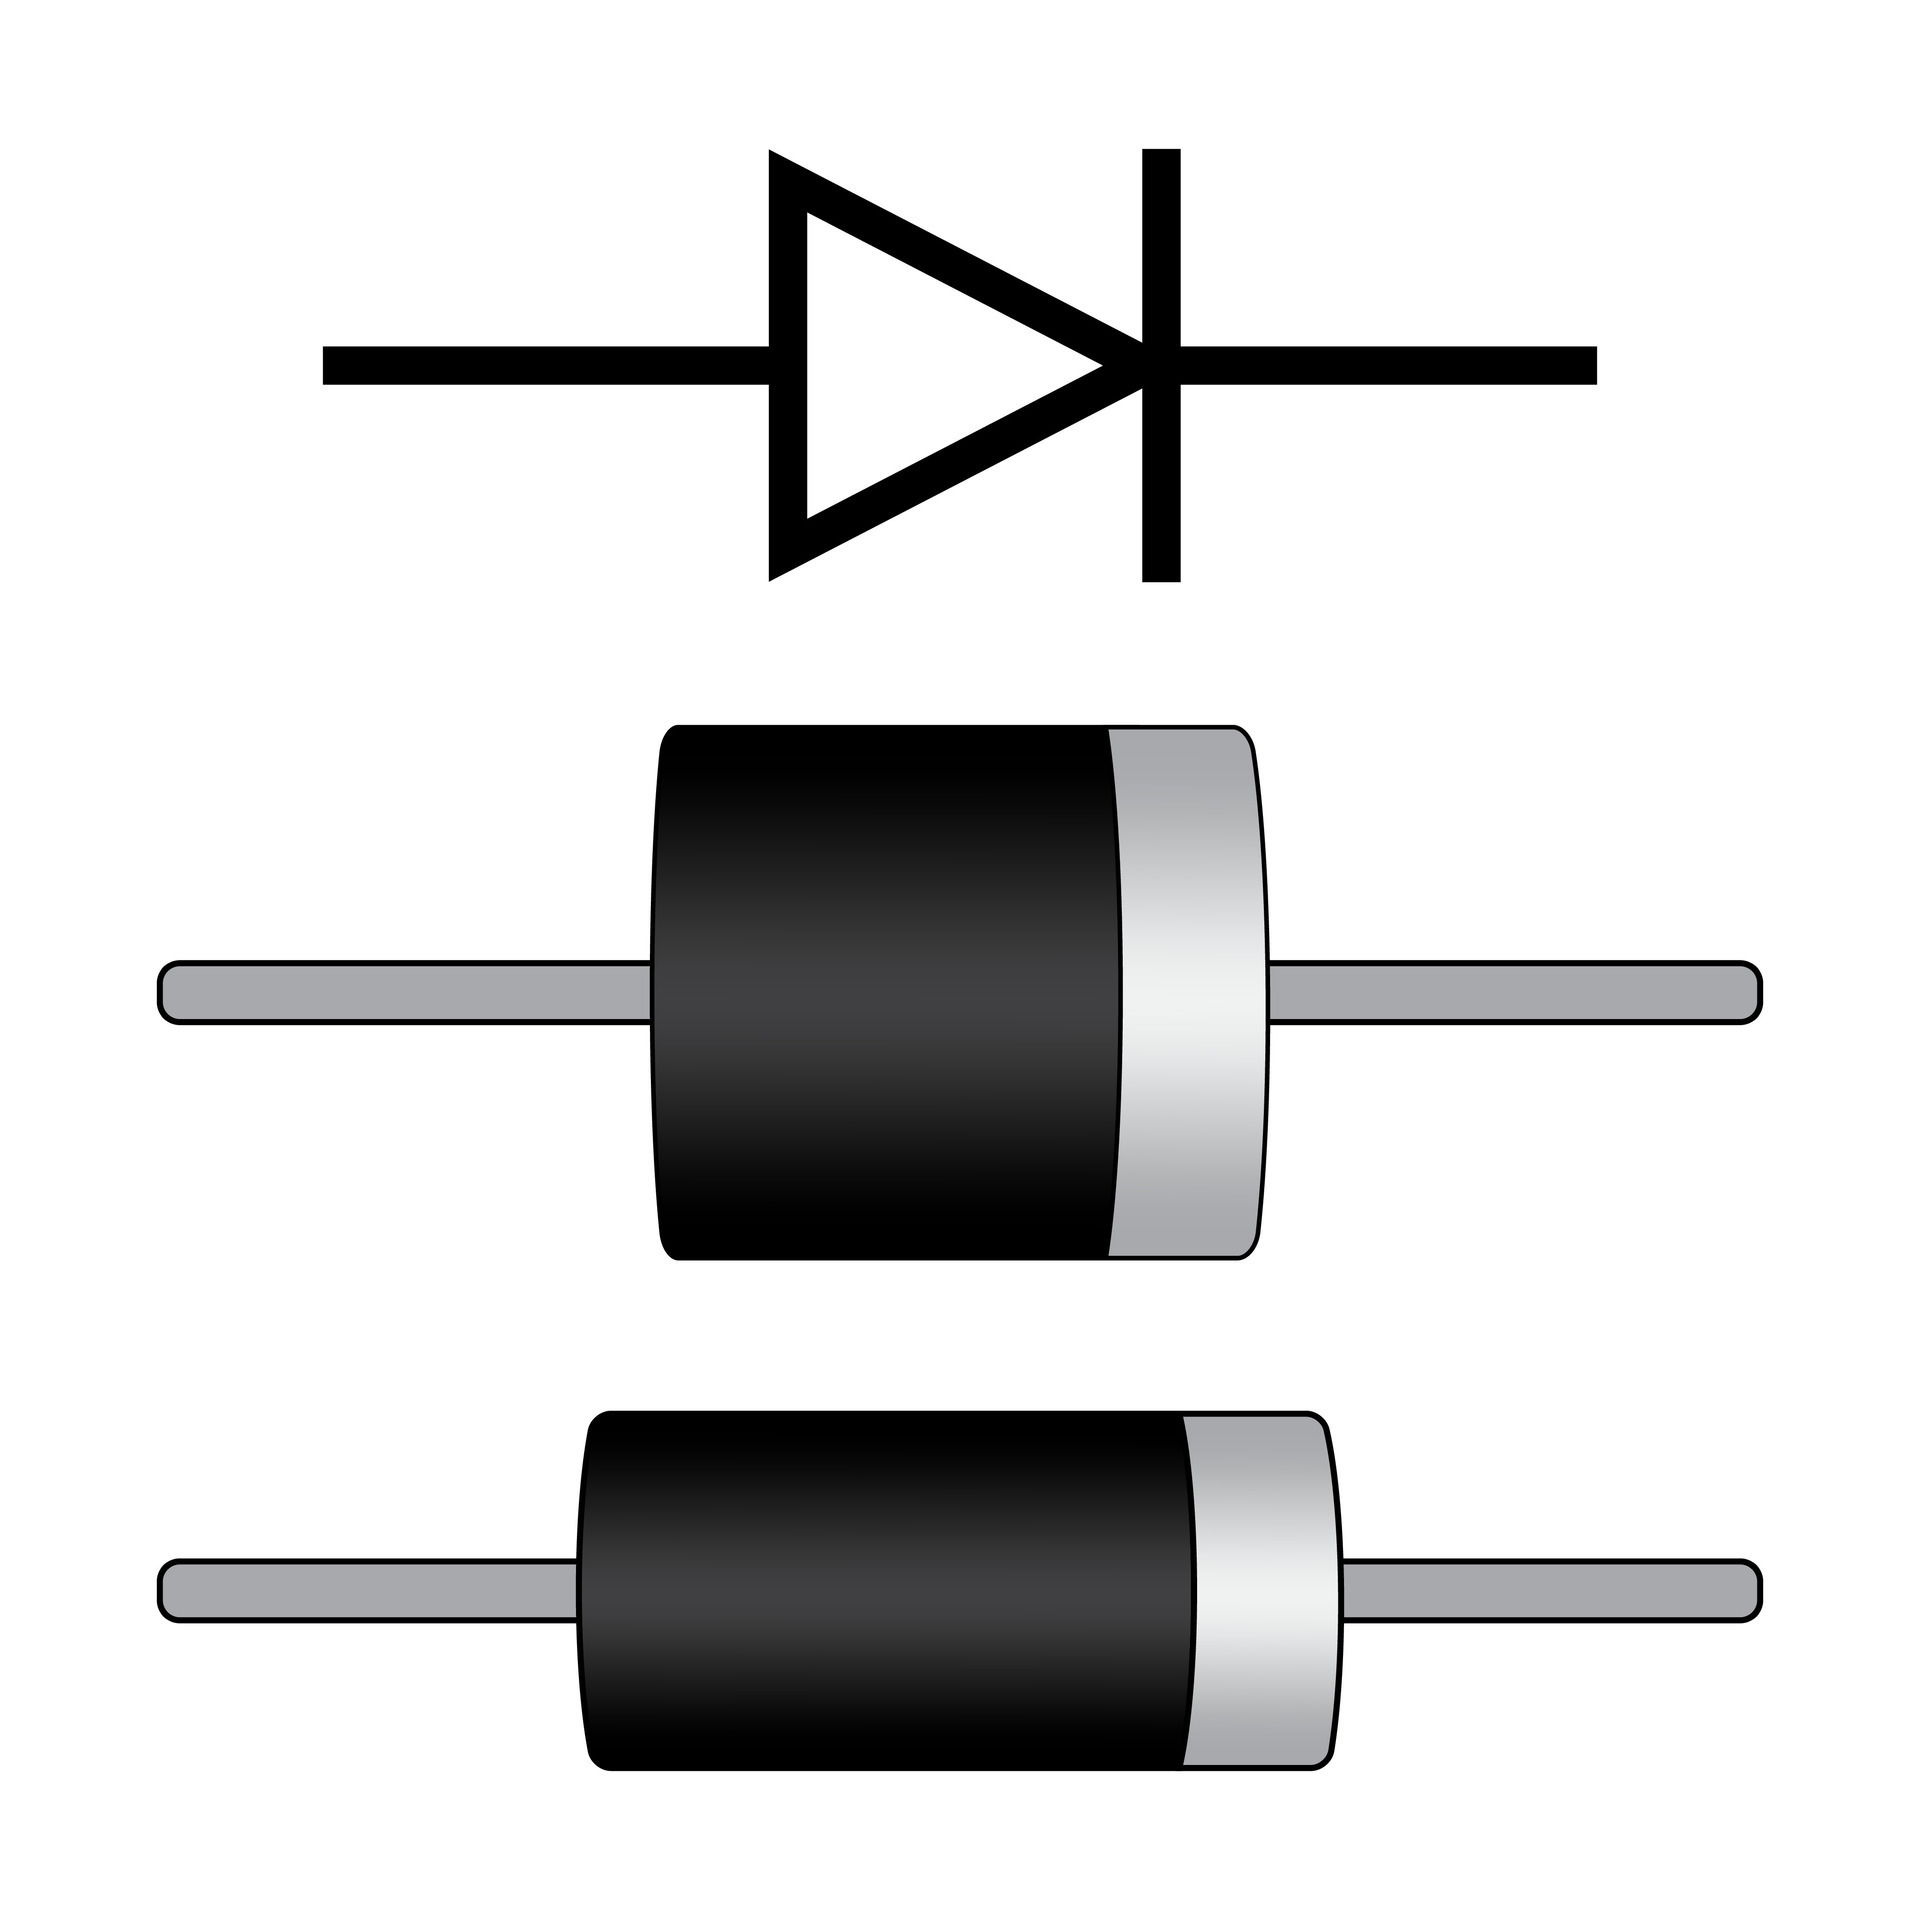 diode et symbole. redresseur diode. électronique composant